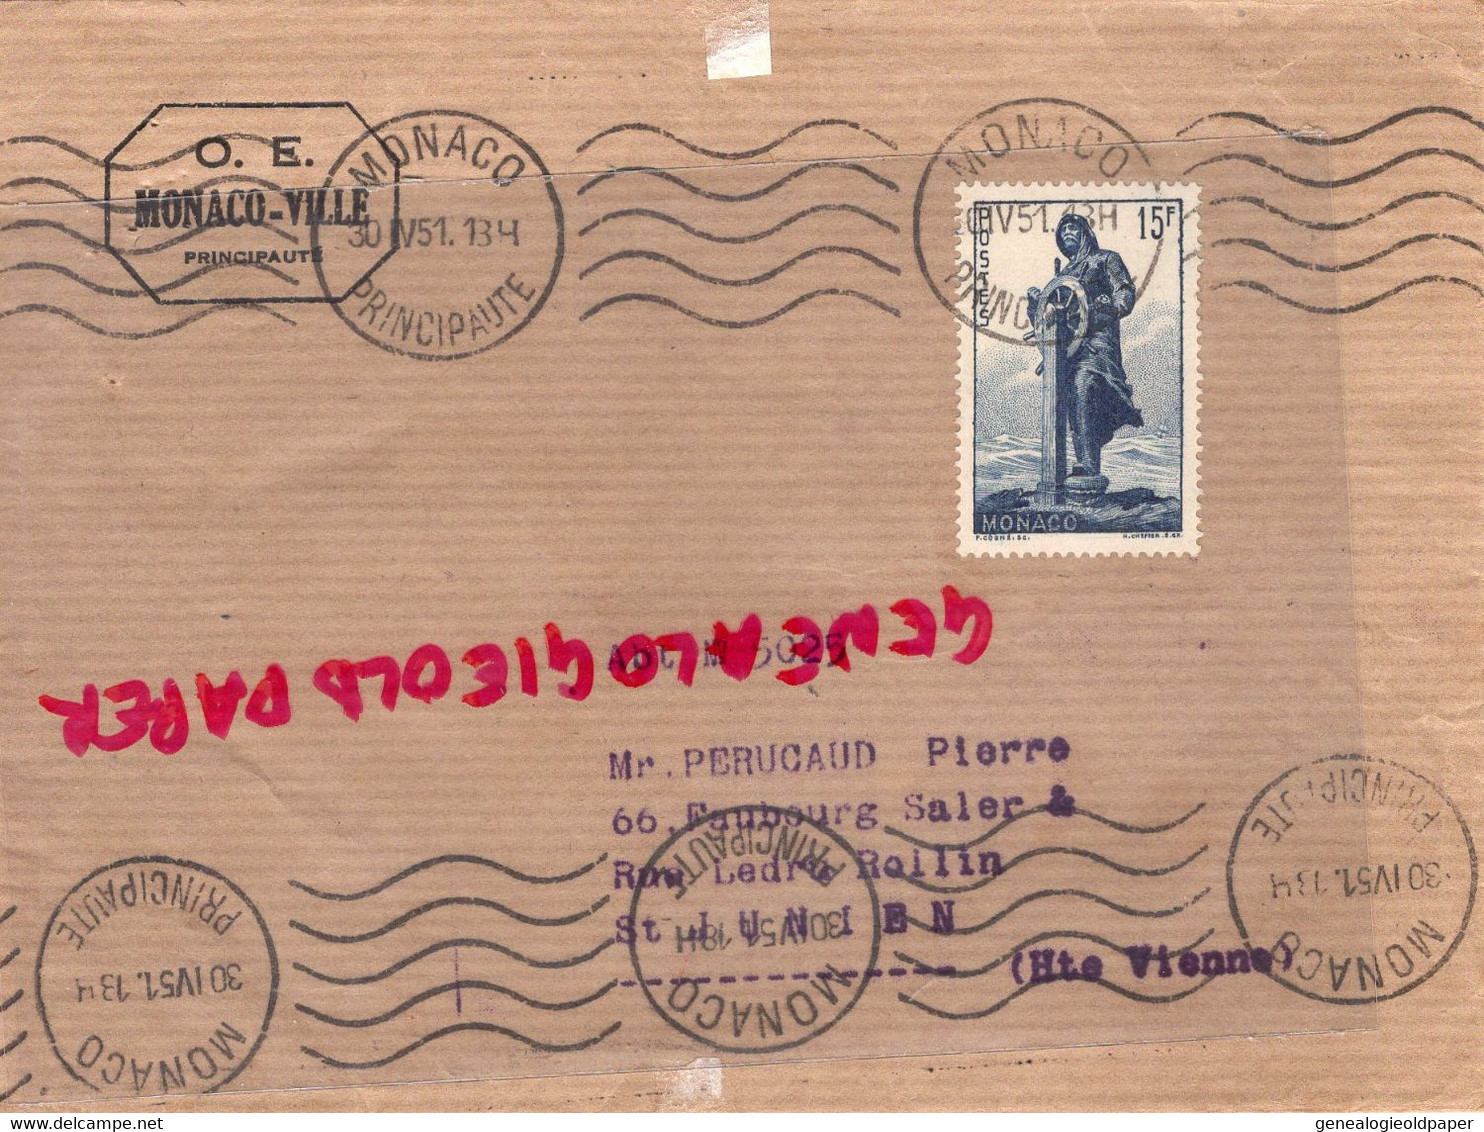 MONACO- MARCOPHILIE TIMBRE 15 F - -PERUCAUD MEGISSERIE ST SAINT JUNIEN RECOMMANDE 1951 - Postmarks